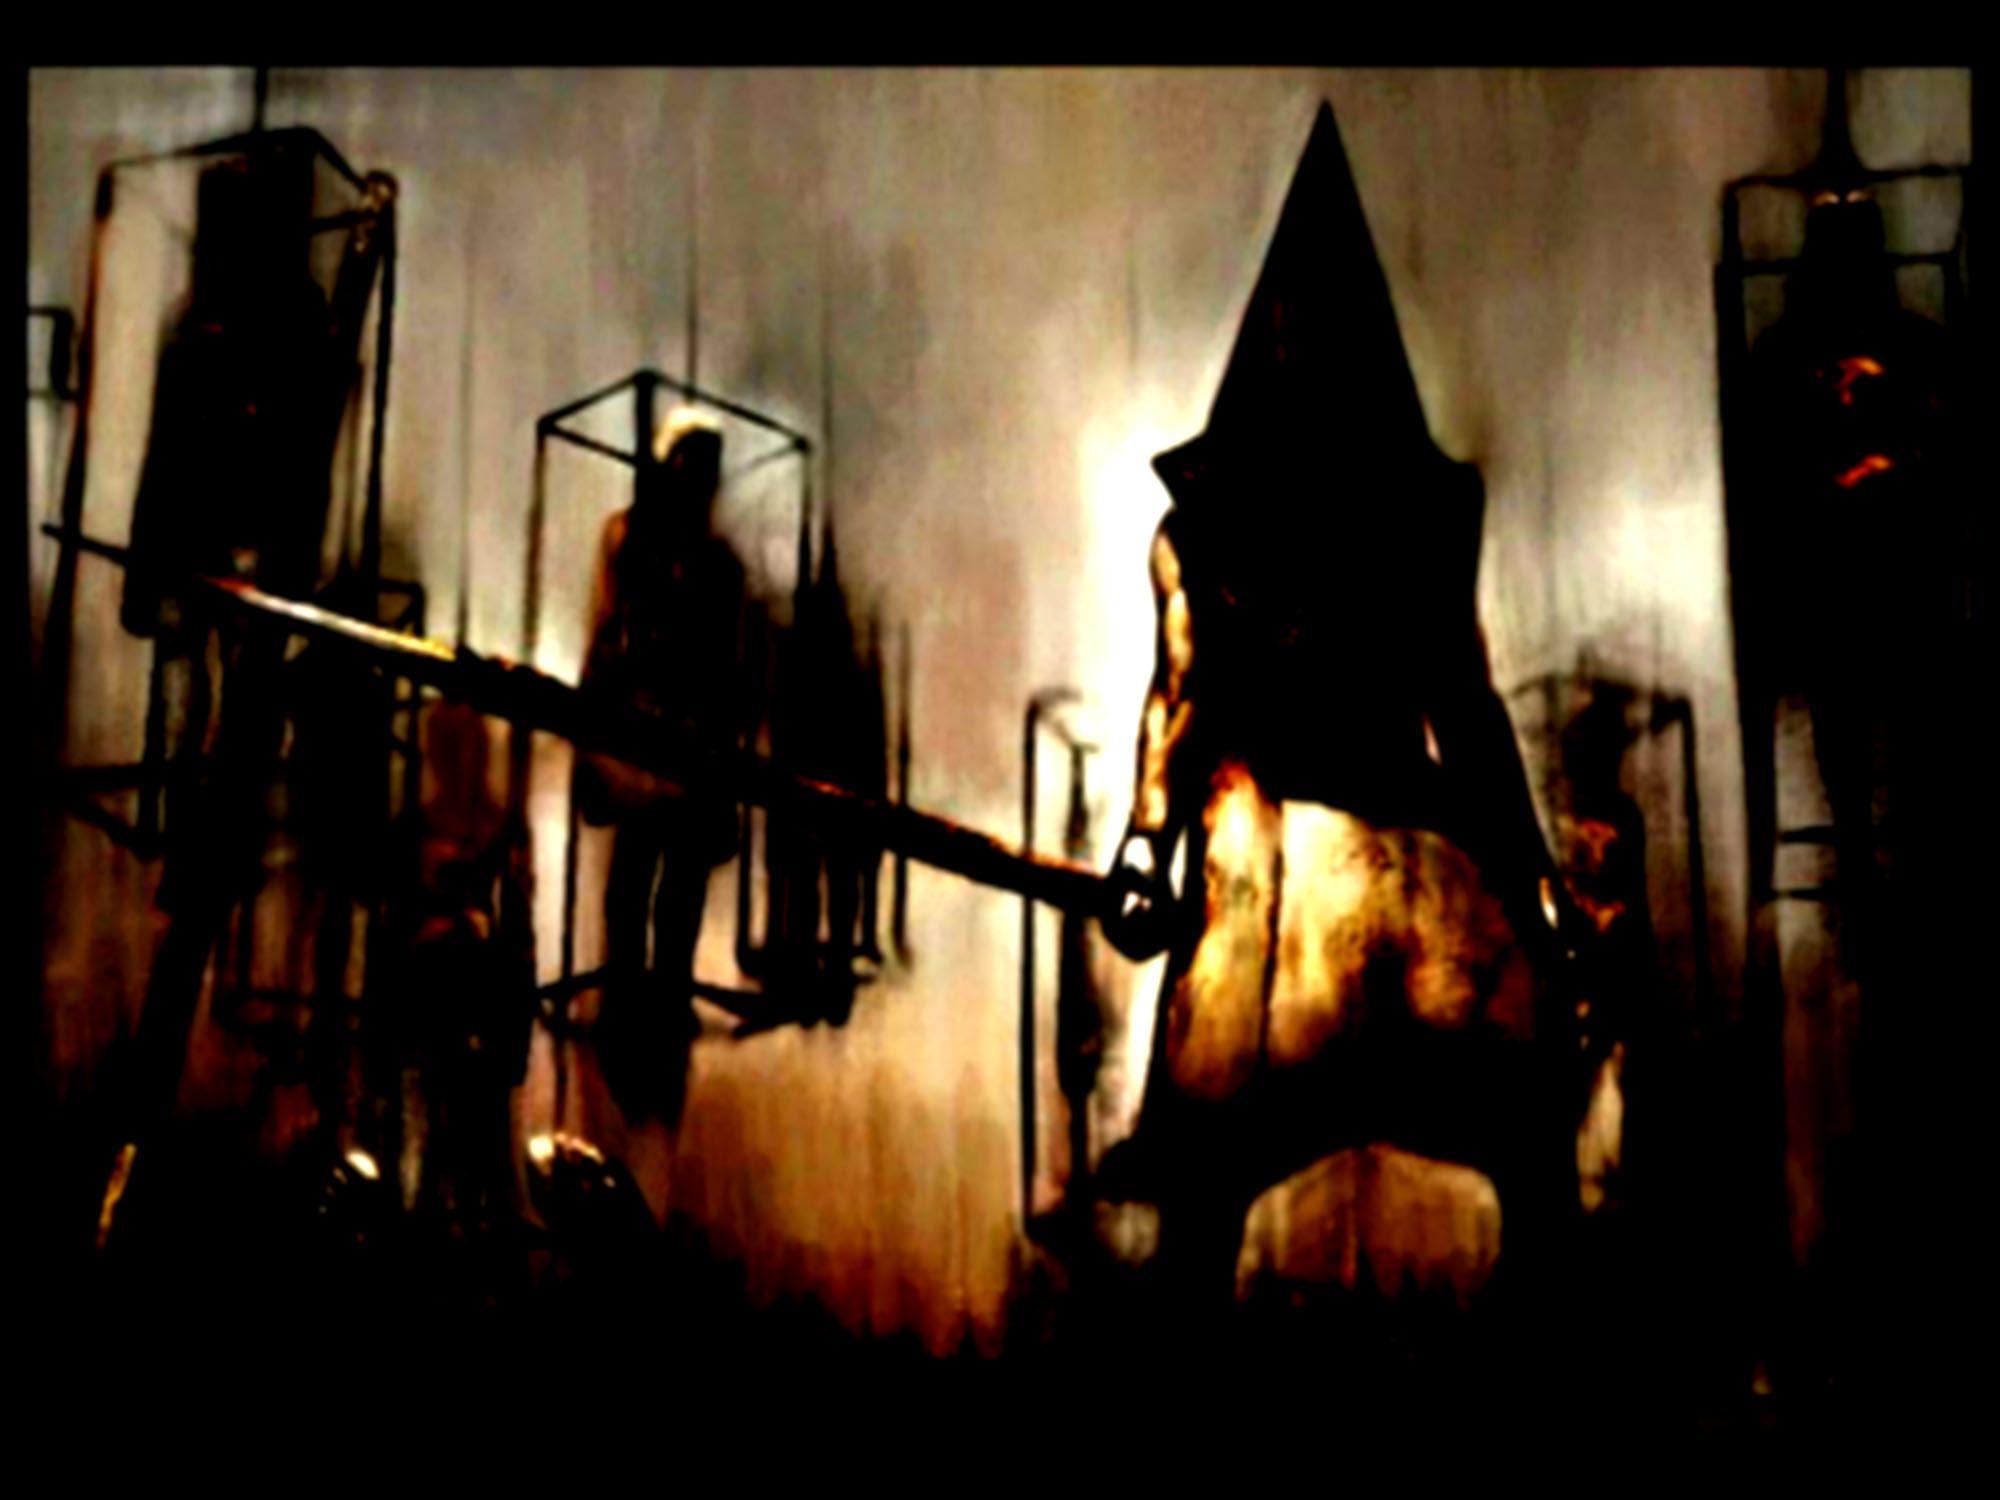 Silent Hill Computer Wallpaper, Desktop Background 2000x1500 Id